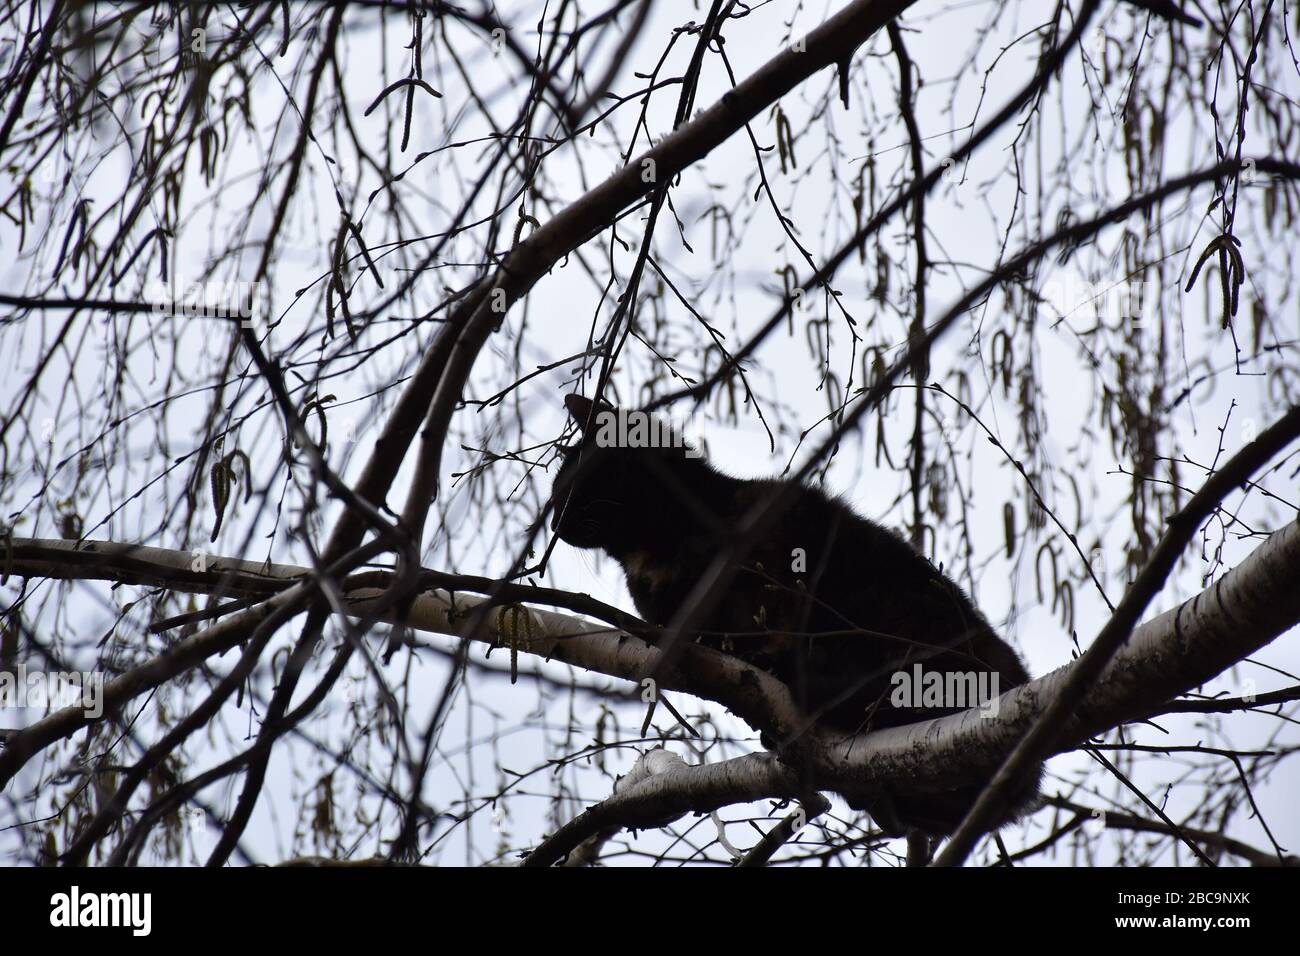 Nella tettoia di betulla senza foglie, sui rami superiori, in altezza, si erge un gatto nero Foto Stock